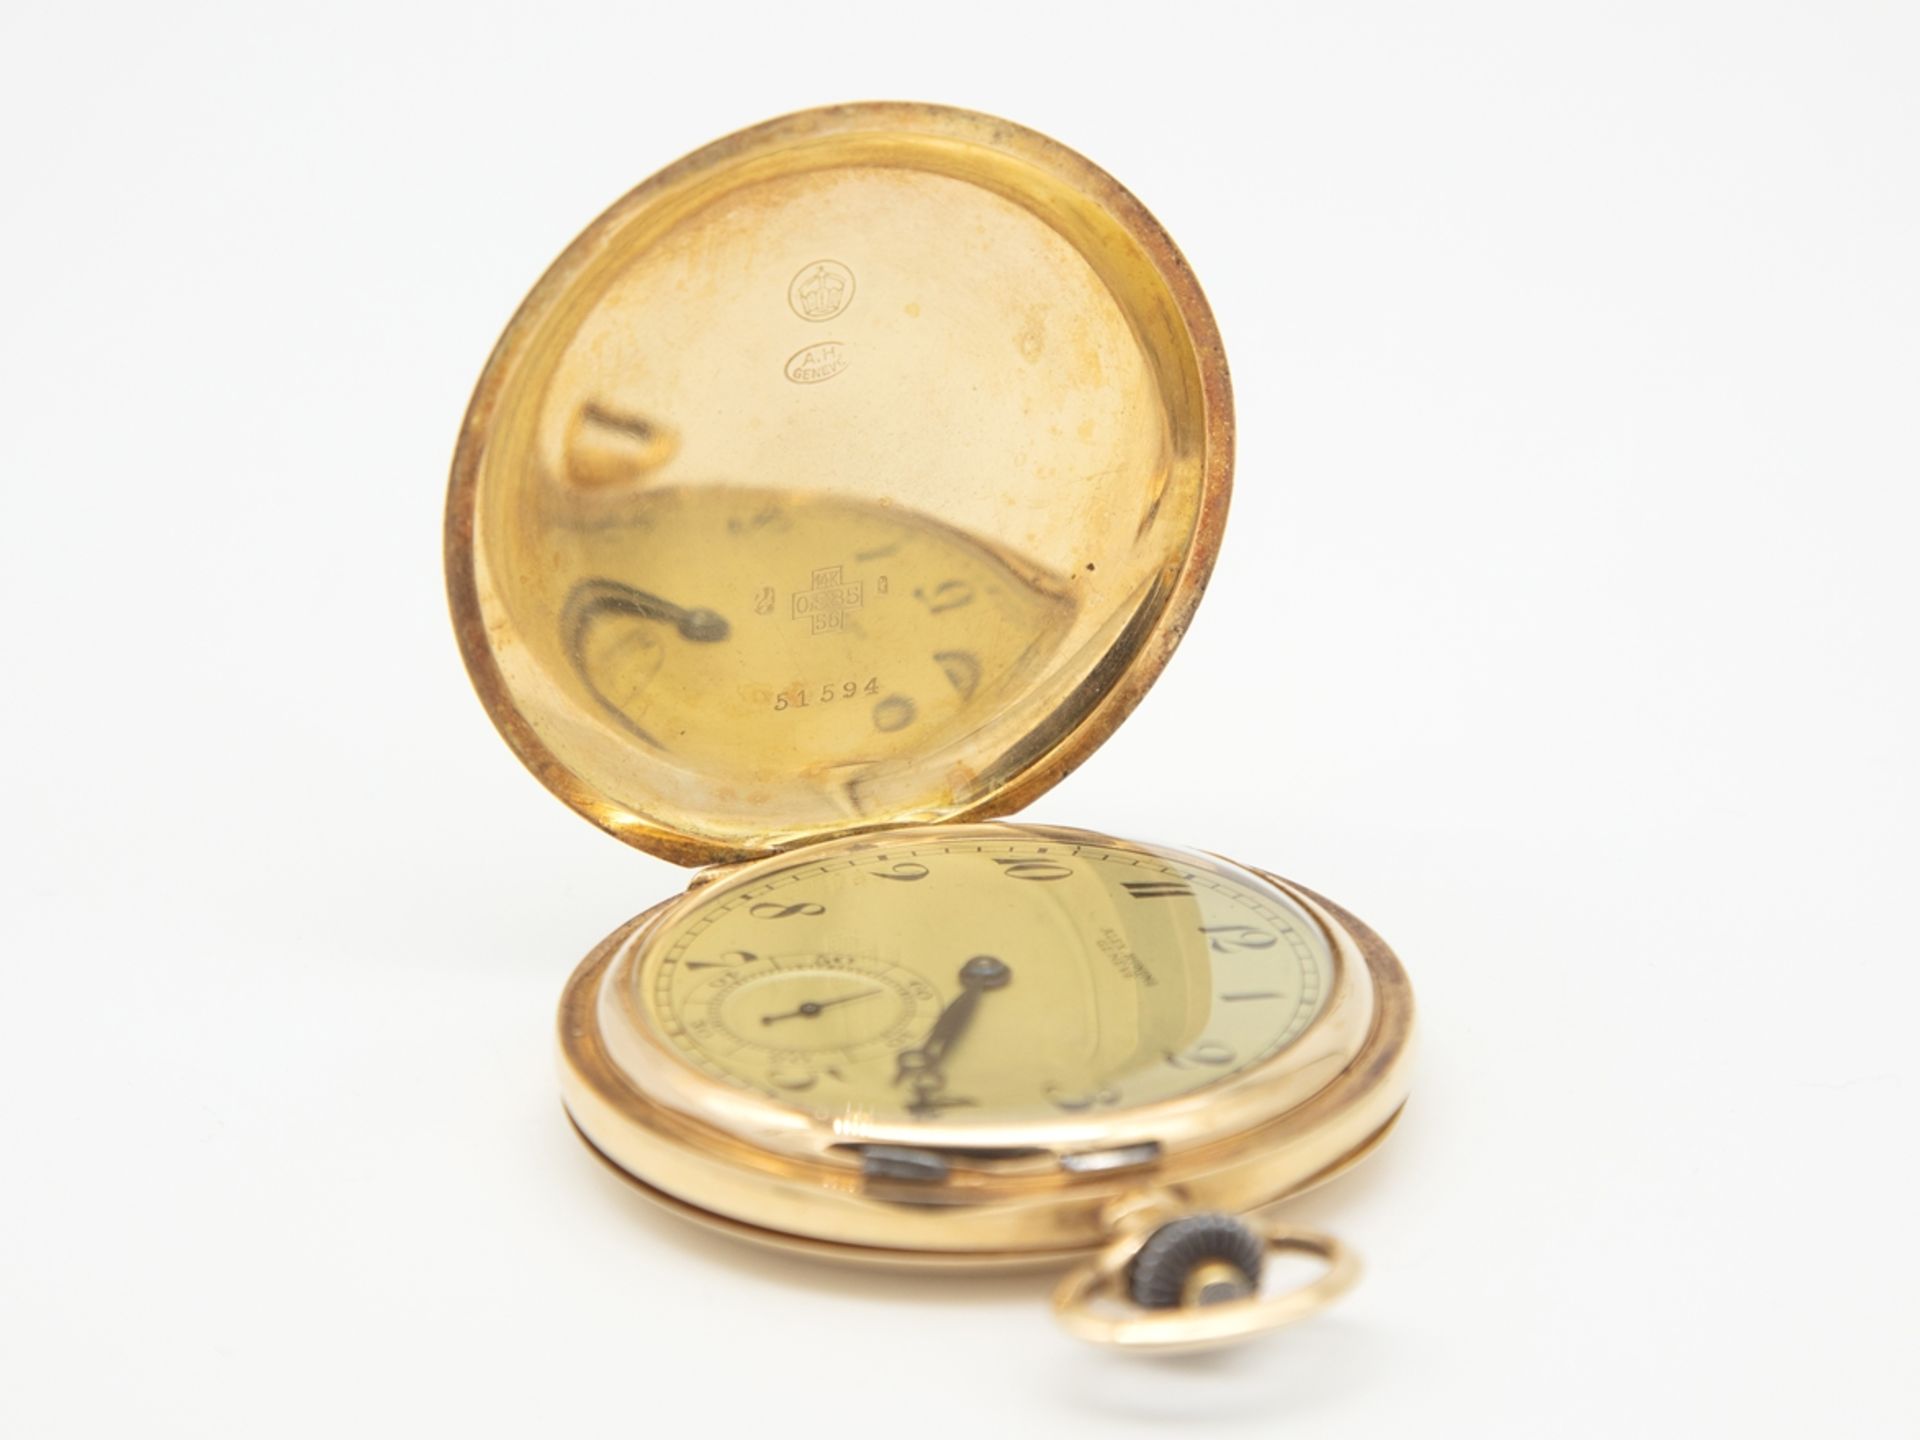 Alex Hüning Savonette pocket watch in 14 K, 585 yellow gold, 3 lids, around 1920  - Image 3 of 8